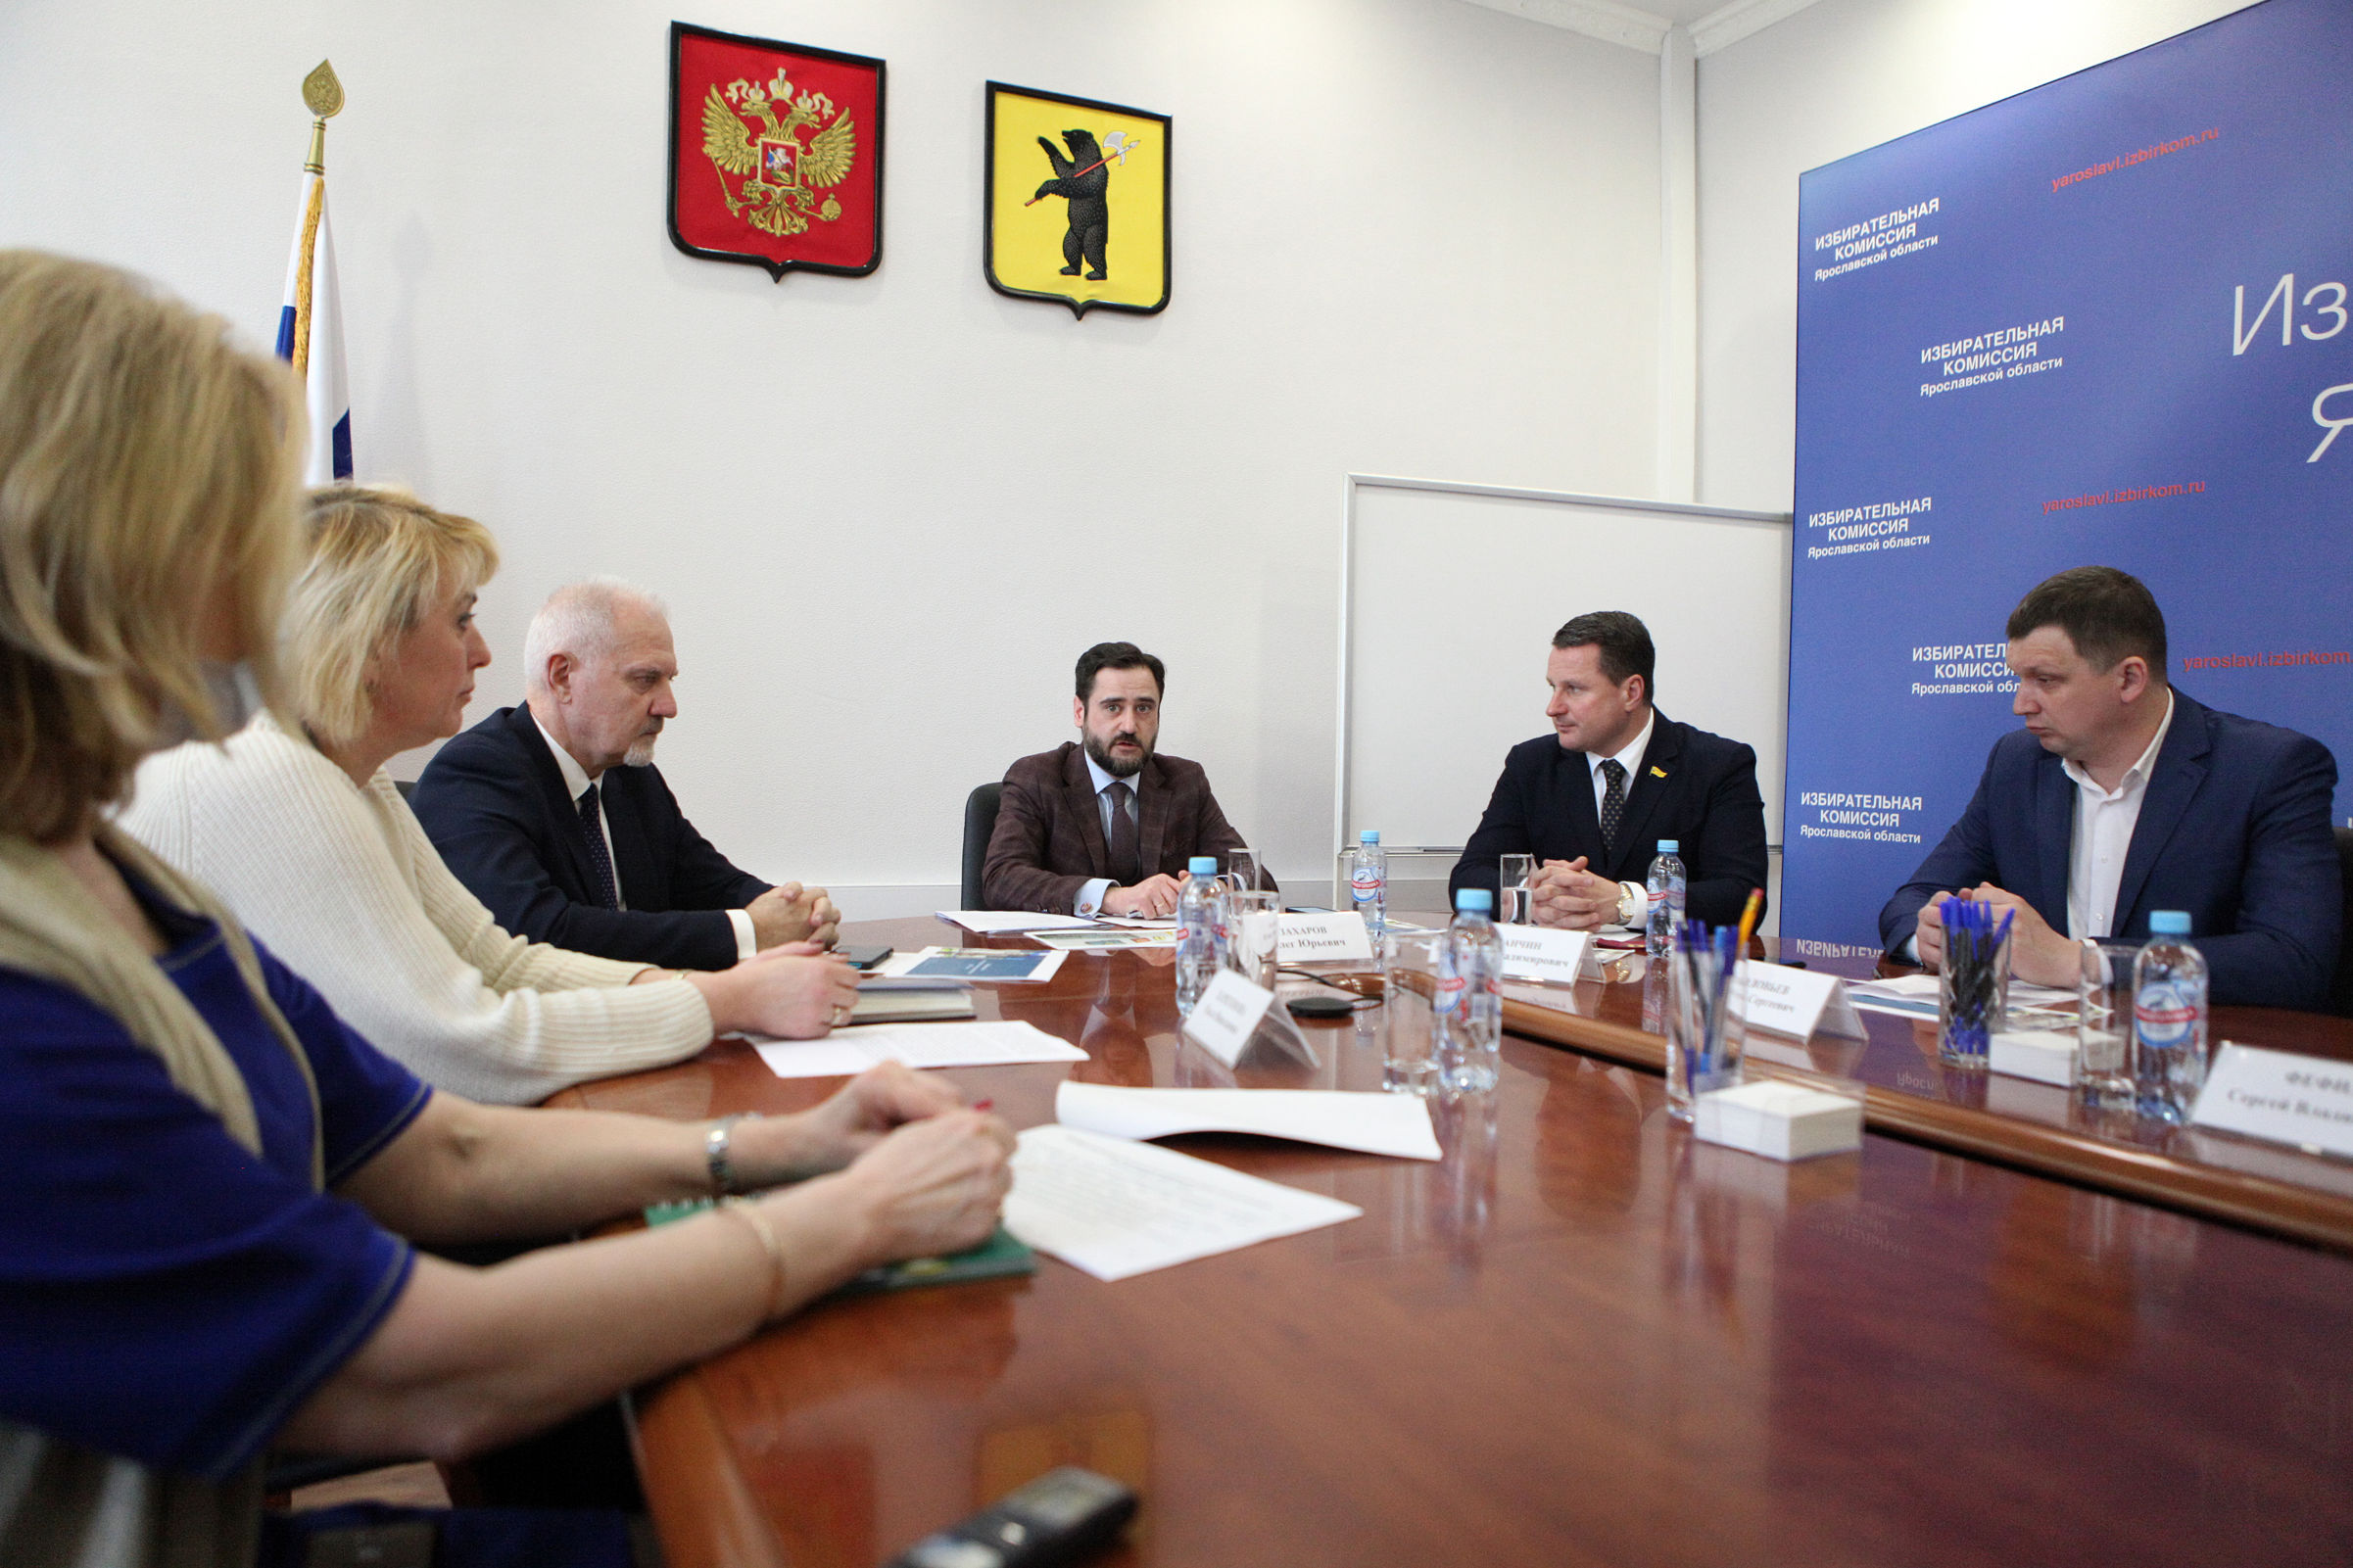 Выборы-2021: в Ярославле руководство облизбиркома и общественные наблюдатели обсудили предстоящие избирательные кампании